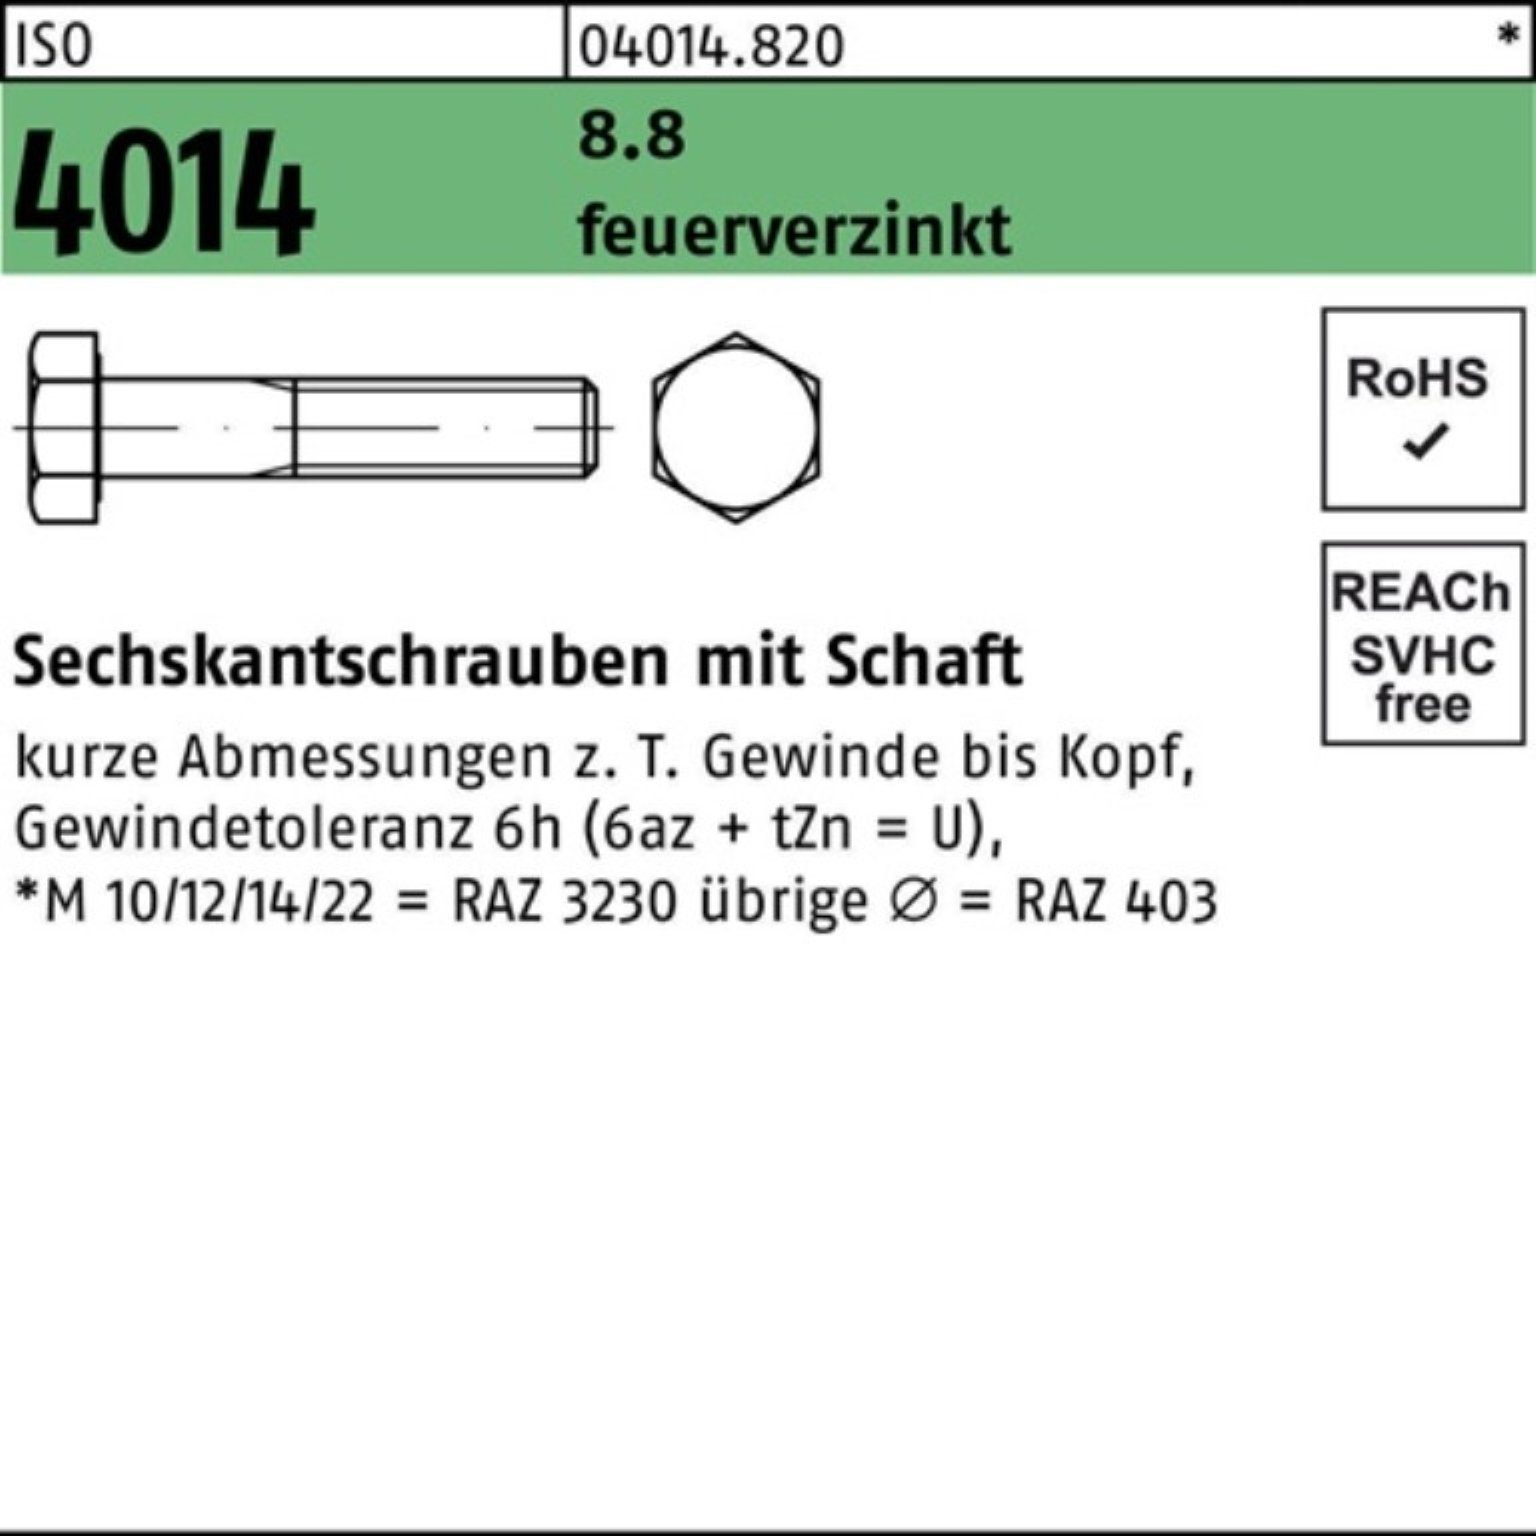 Bufab Sechskantschraube 100er Pack 4014 M16x 8.8 2 Schaft Sechskantschraube 120 feuerverz. ISO